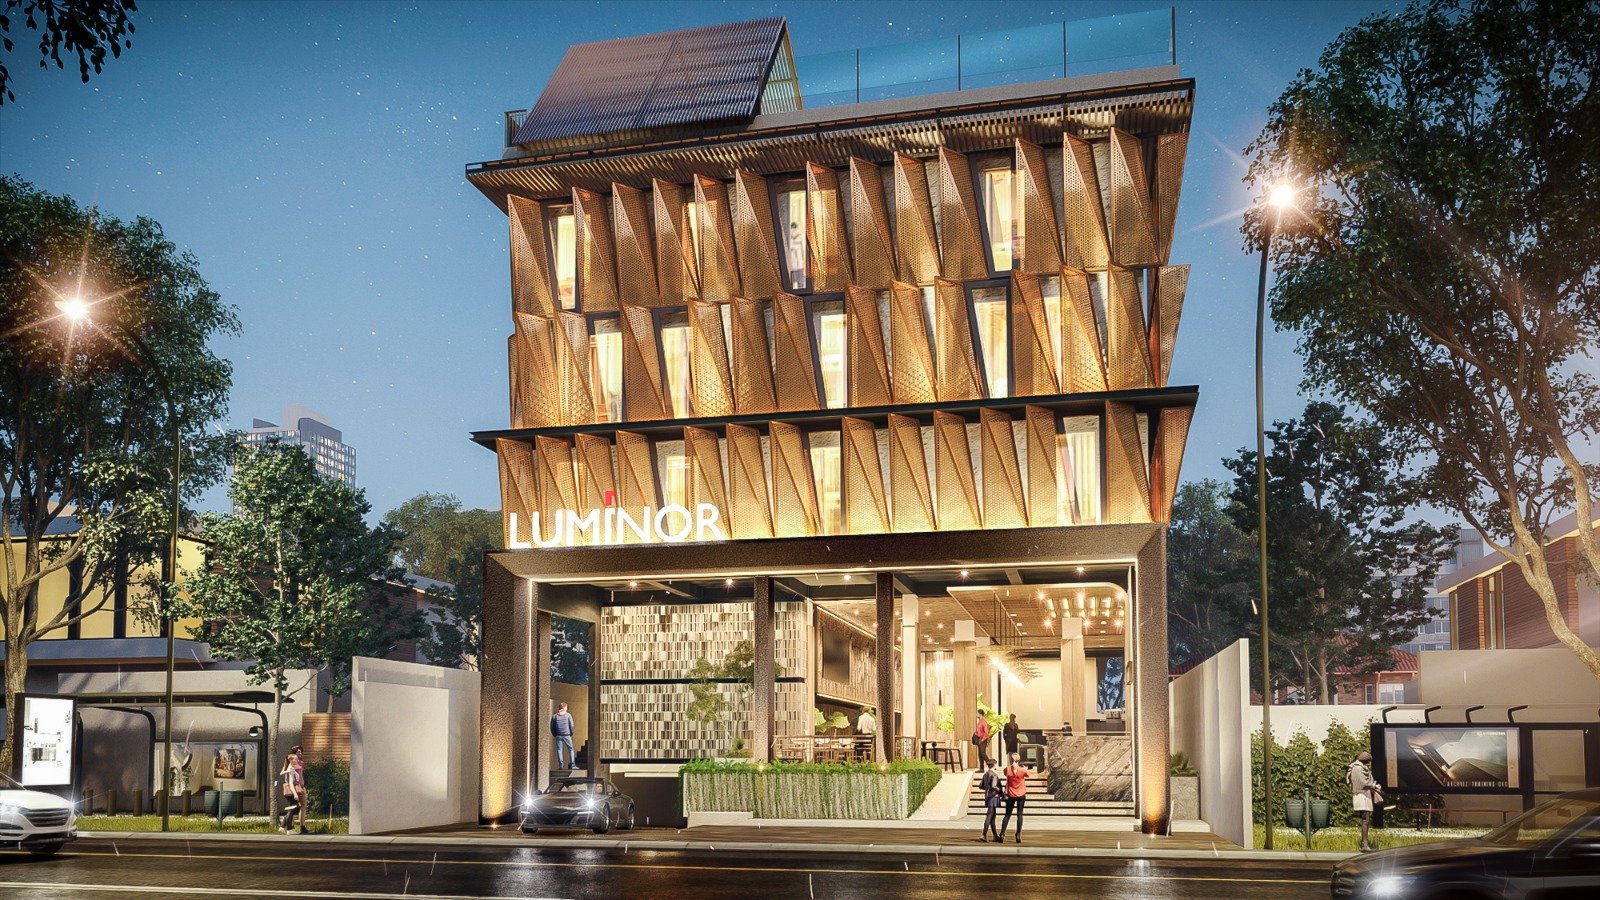 WHHG Akan Segera Membuka Luminor Hotel di Bali
